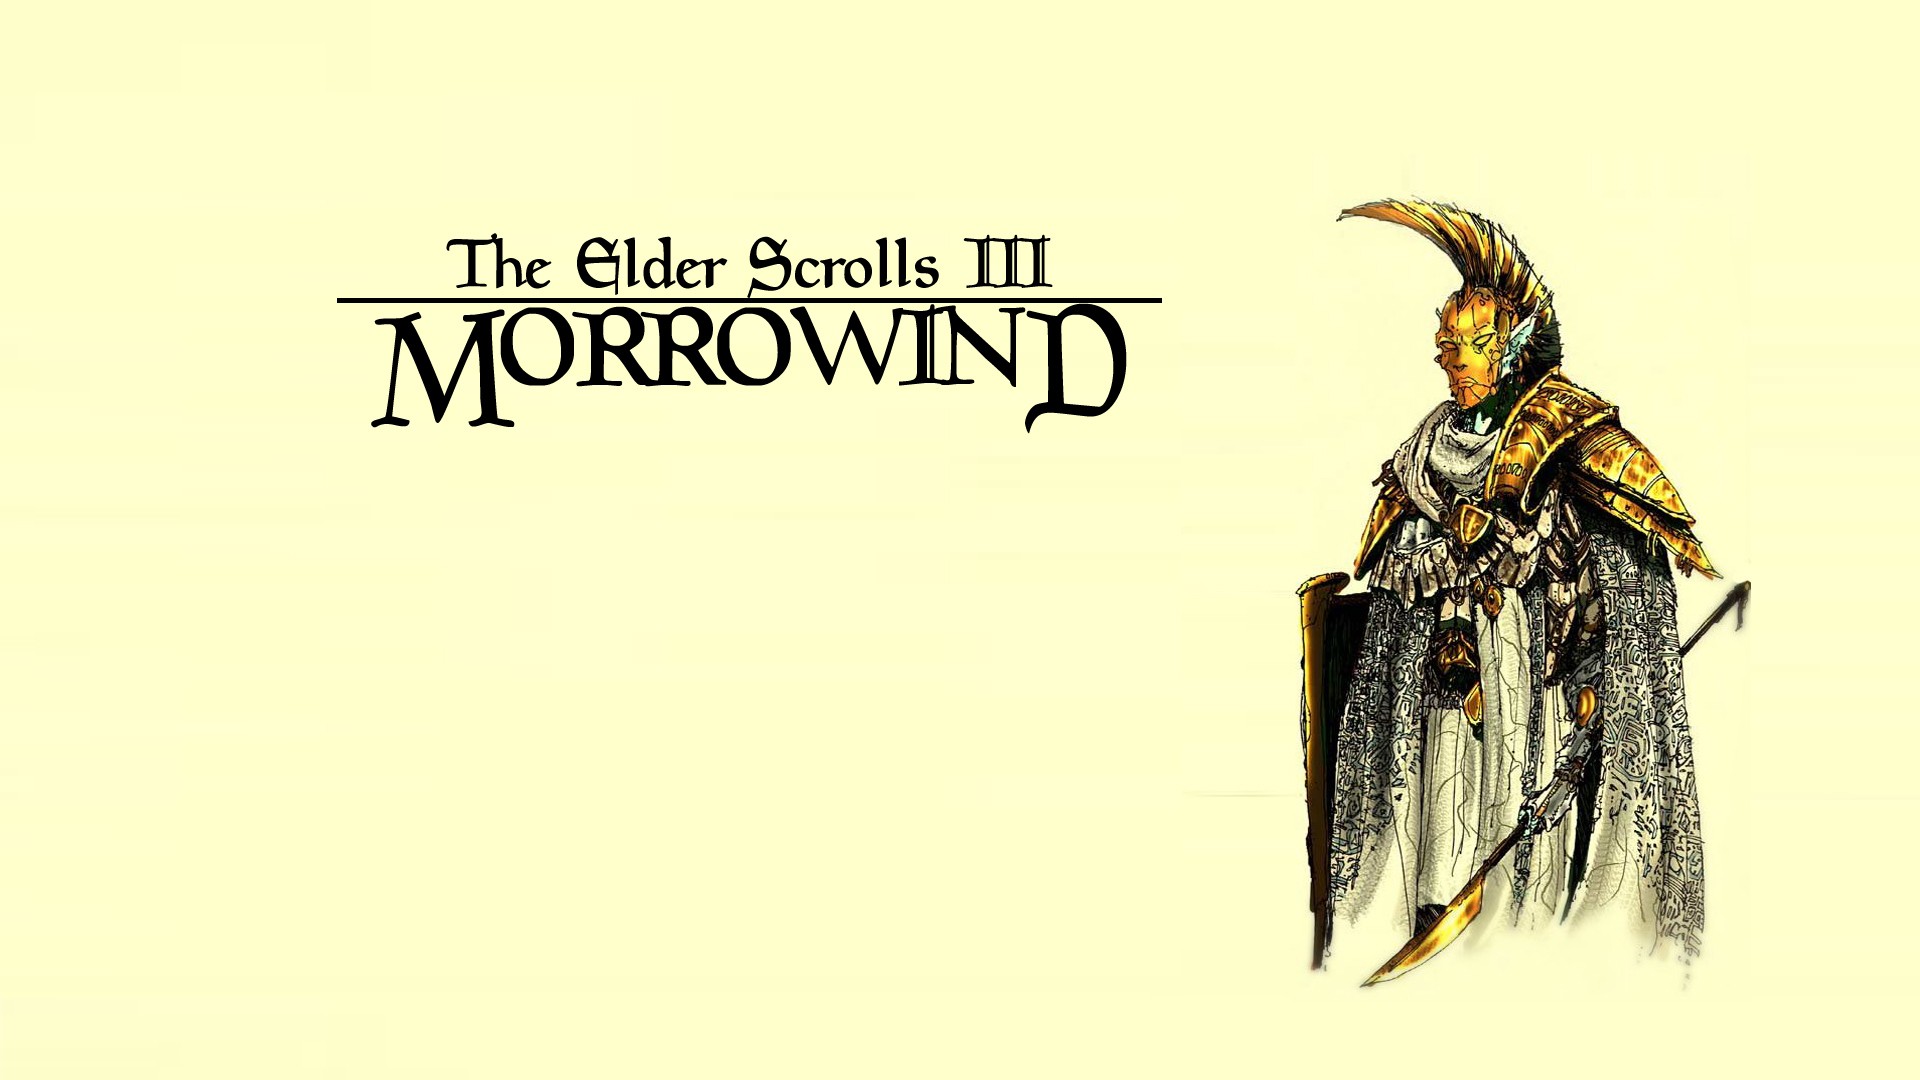 General 1920x1080 The Elder Scrolls III: Morrowind video game art RPG simple background PC gaming video games